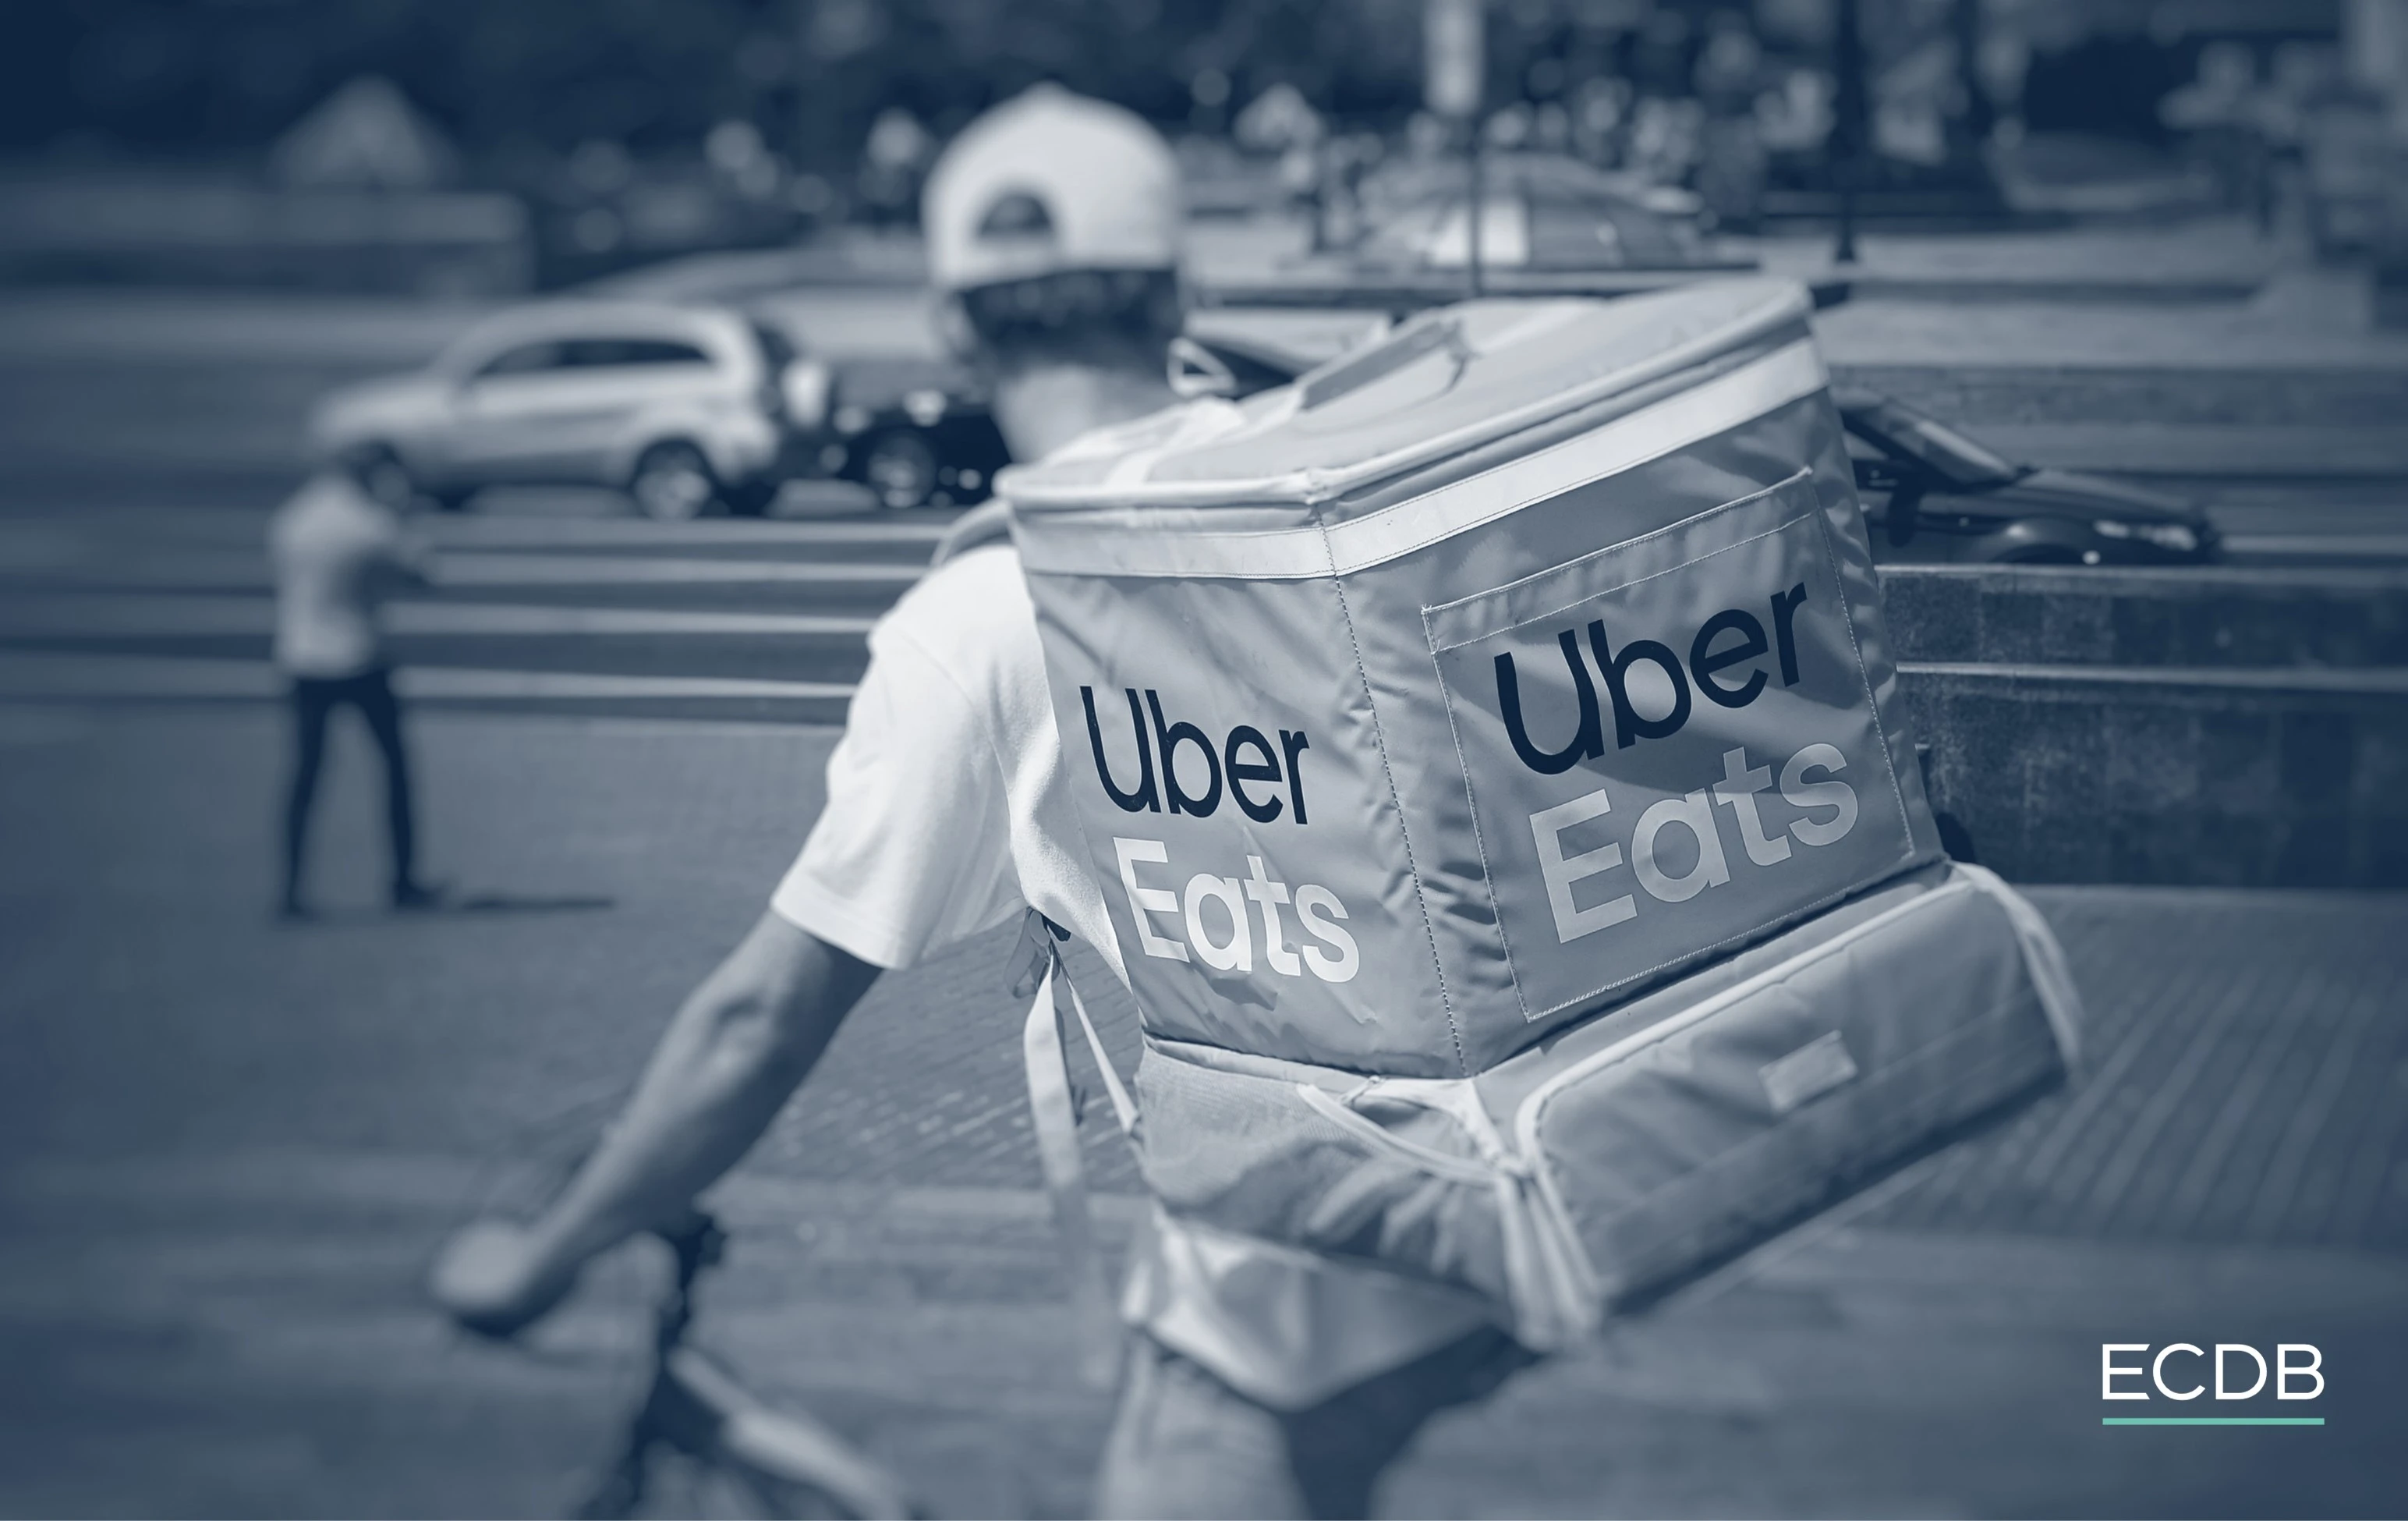 Uber eats delivery bike